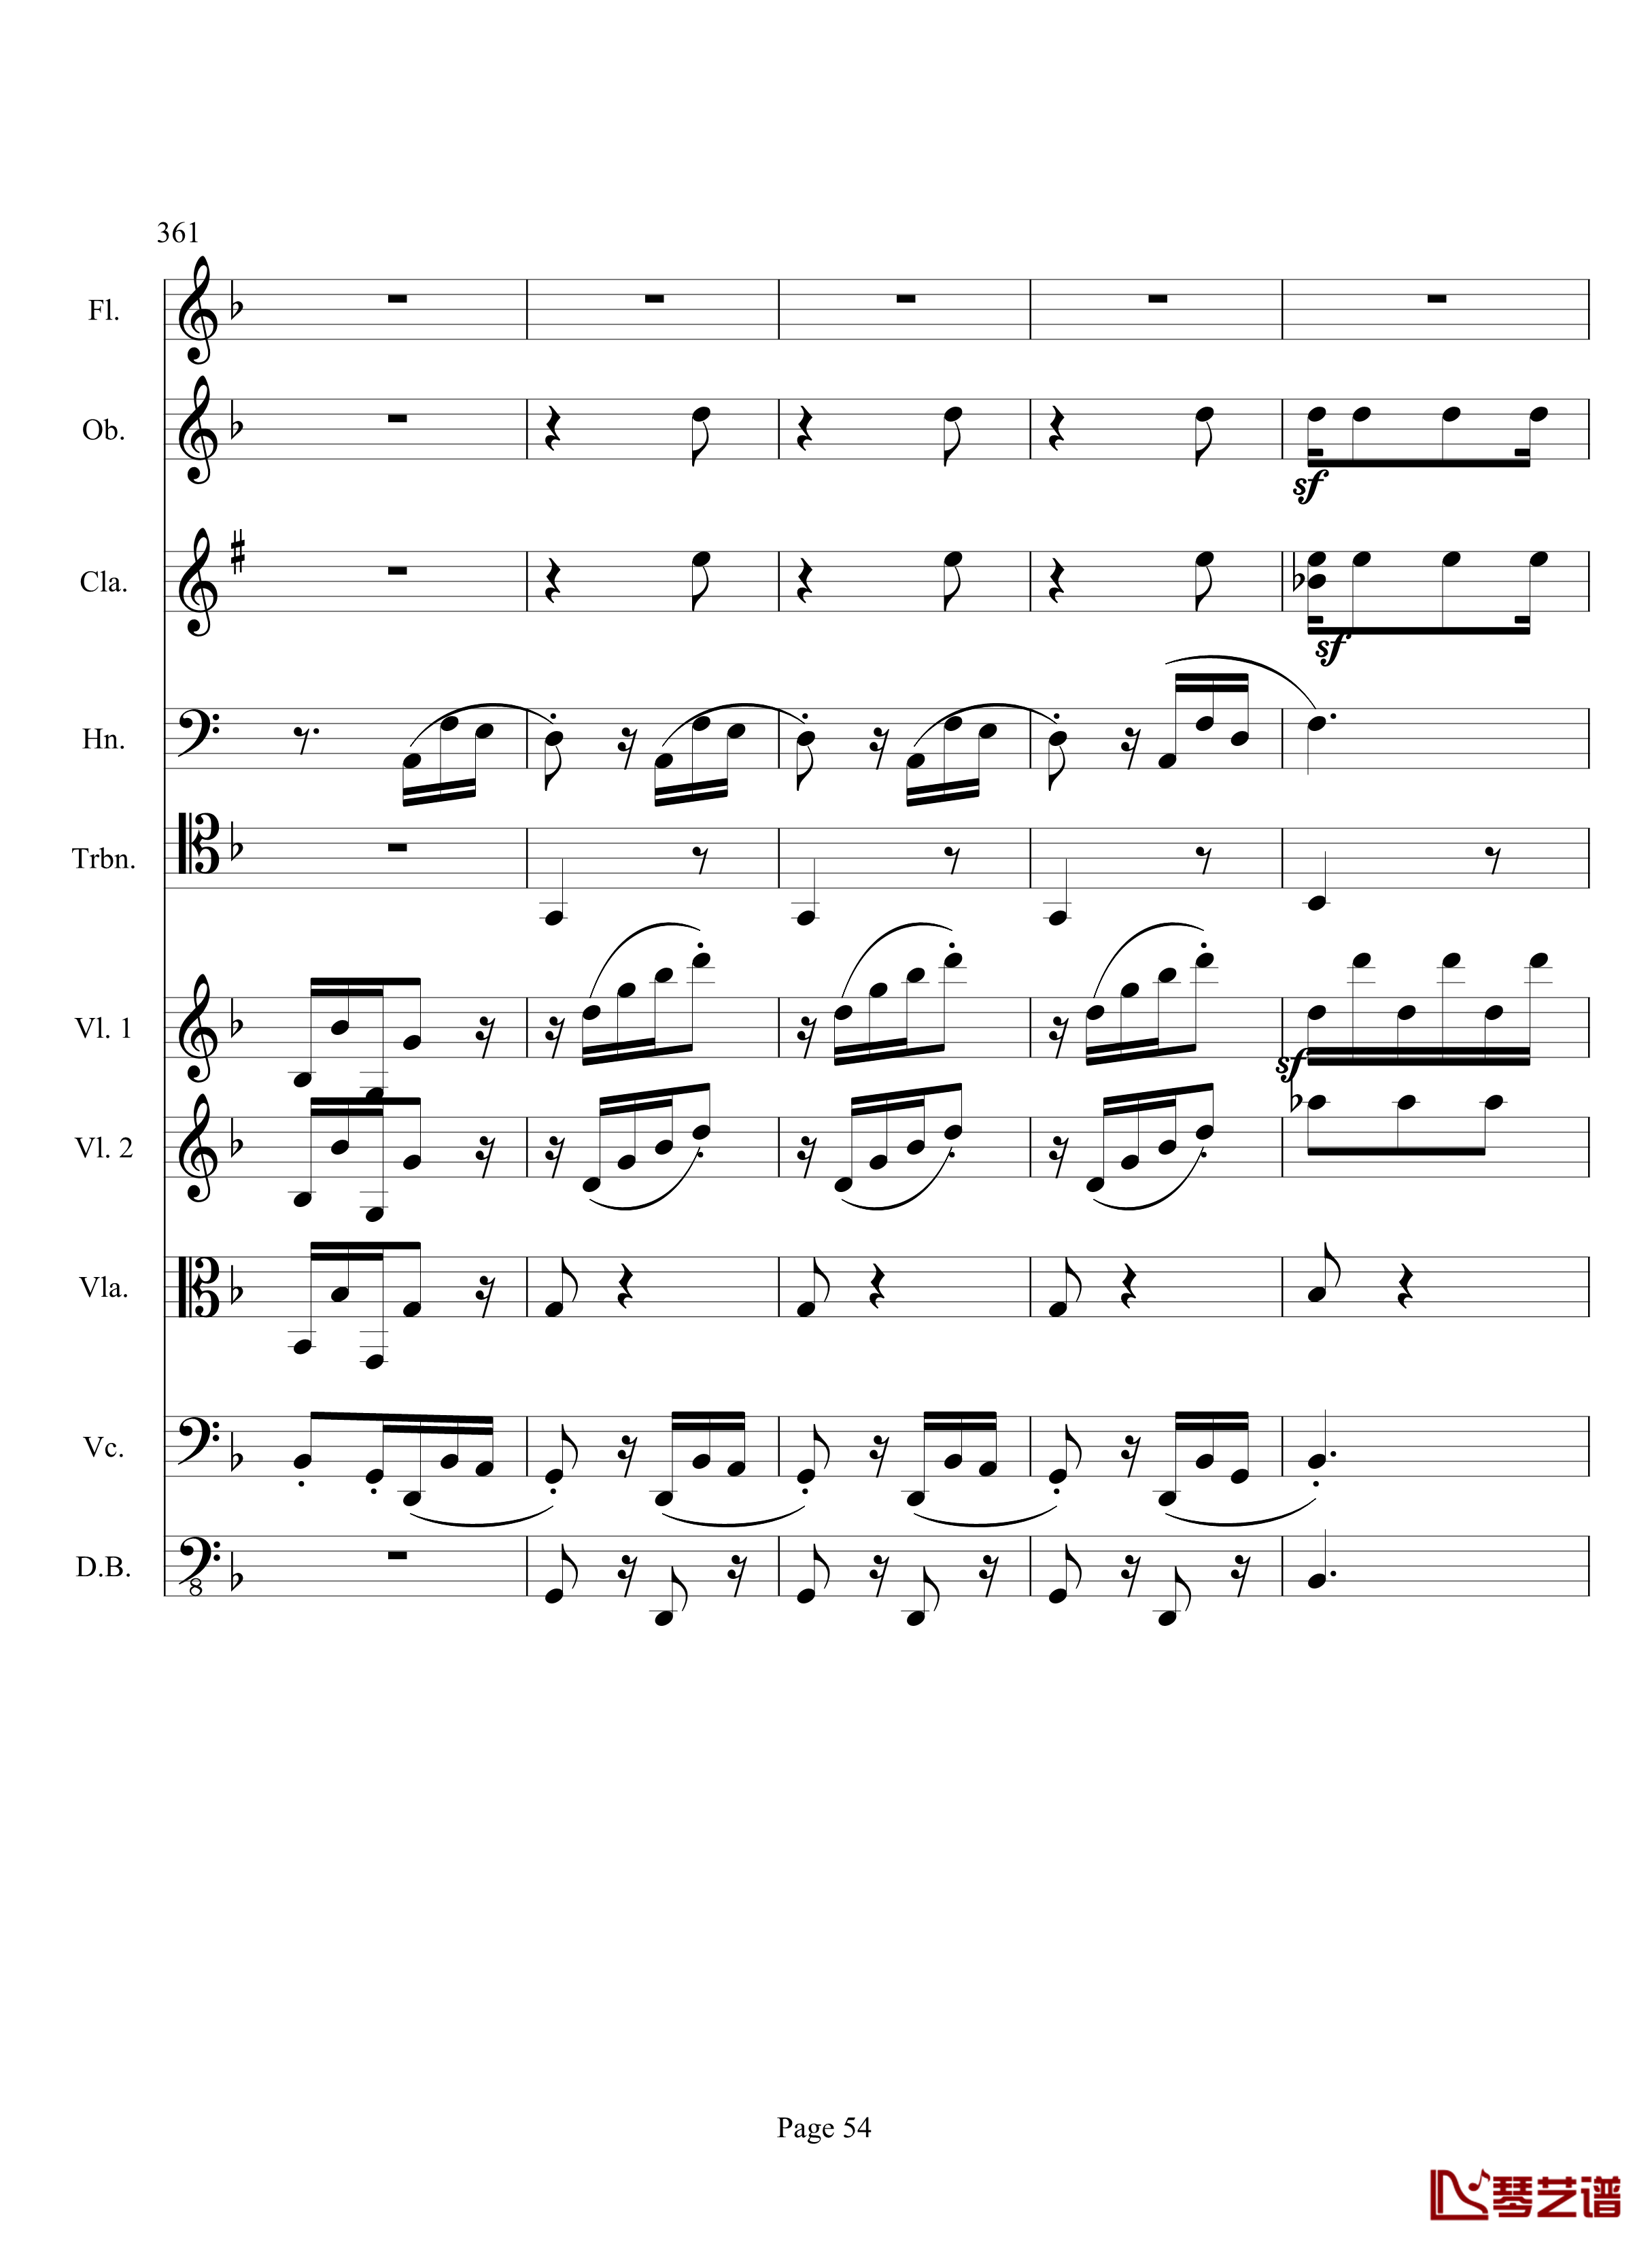 奏鸣曲之交响钢琴谱-第17首-Ⅲ-贝多芬-beethoven54